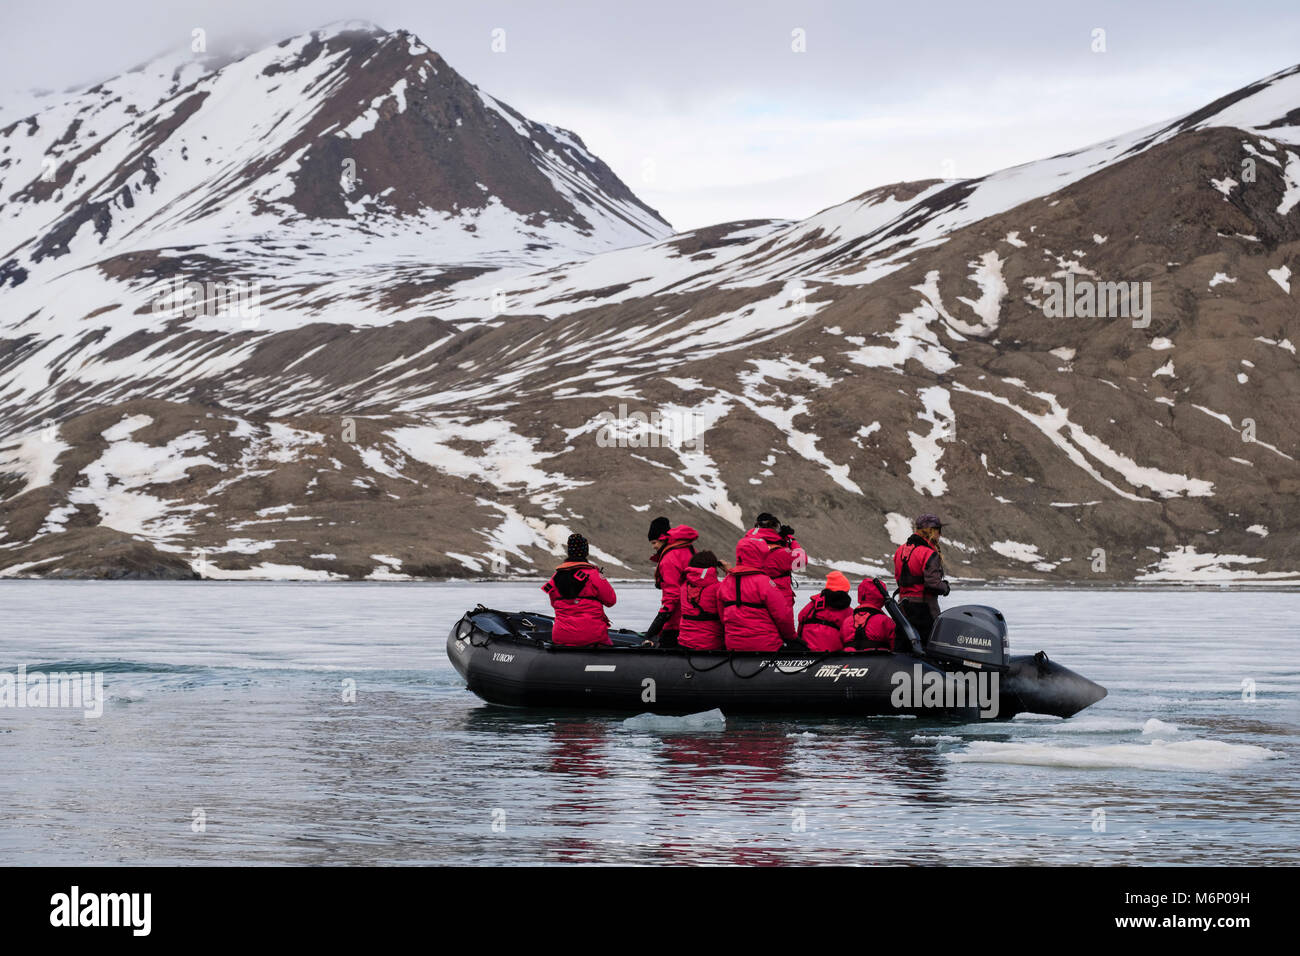 G Expedition cruise passagers dans un canot Zodiac pour observer la faune au large des côtes de l'île de Spitsbergen, Svalbard, Norvège, Scandinavie, Europe Banque D'Images